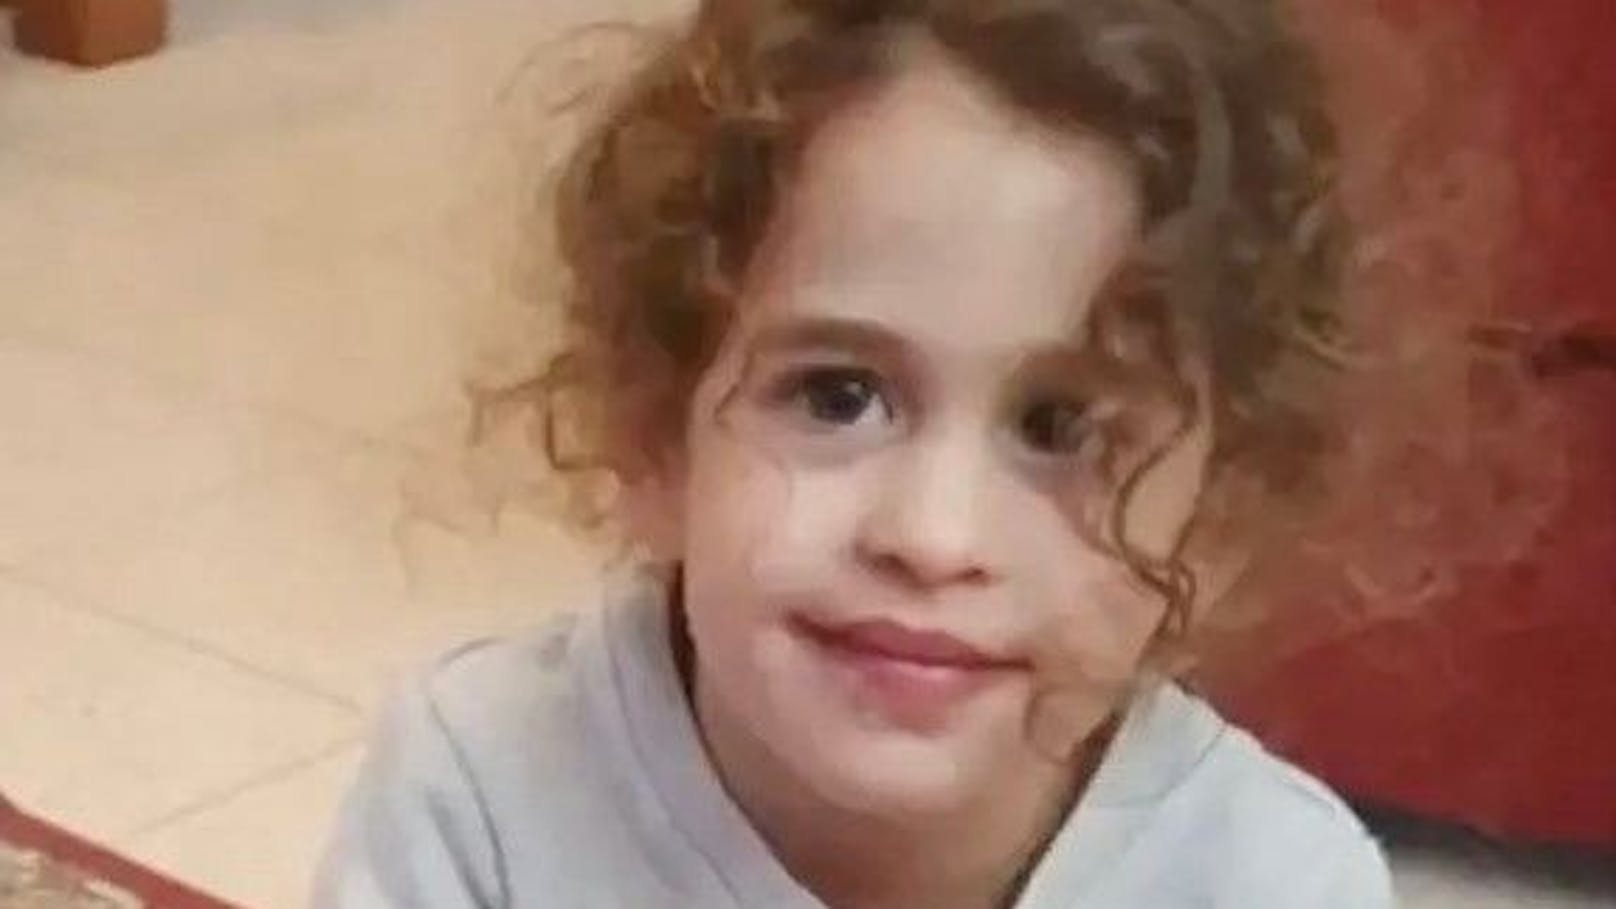 Das Mädchen war im Kibbutz Kfar entführt worden, nachdem seine Eltern Roi und Smadar ermordet worden waren.